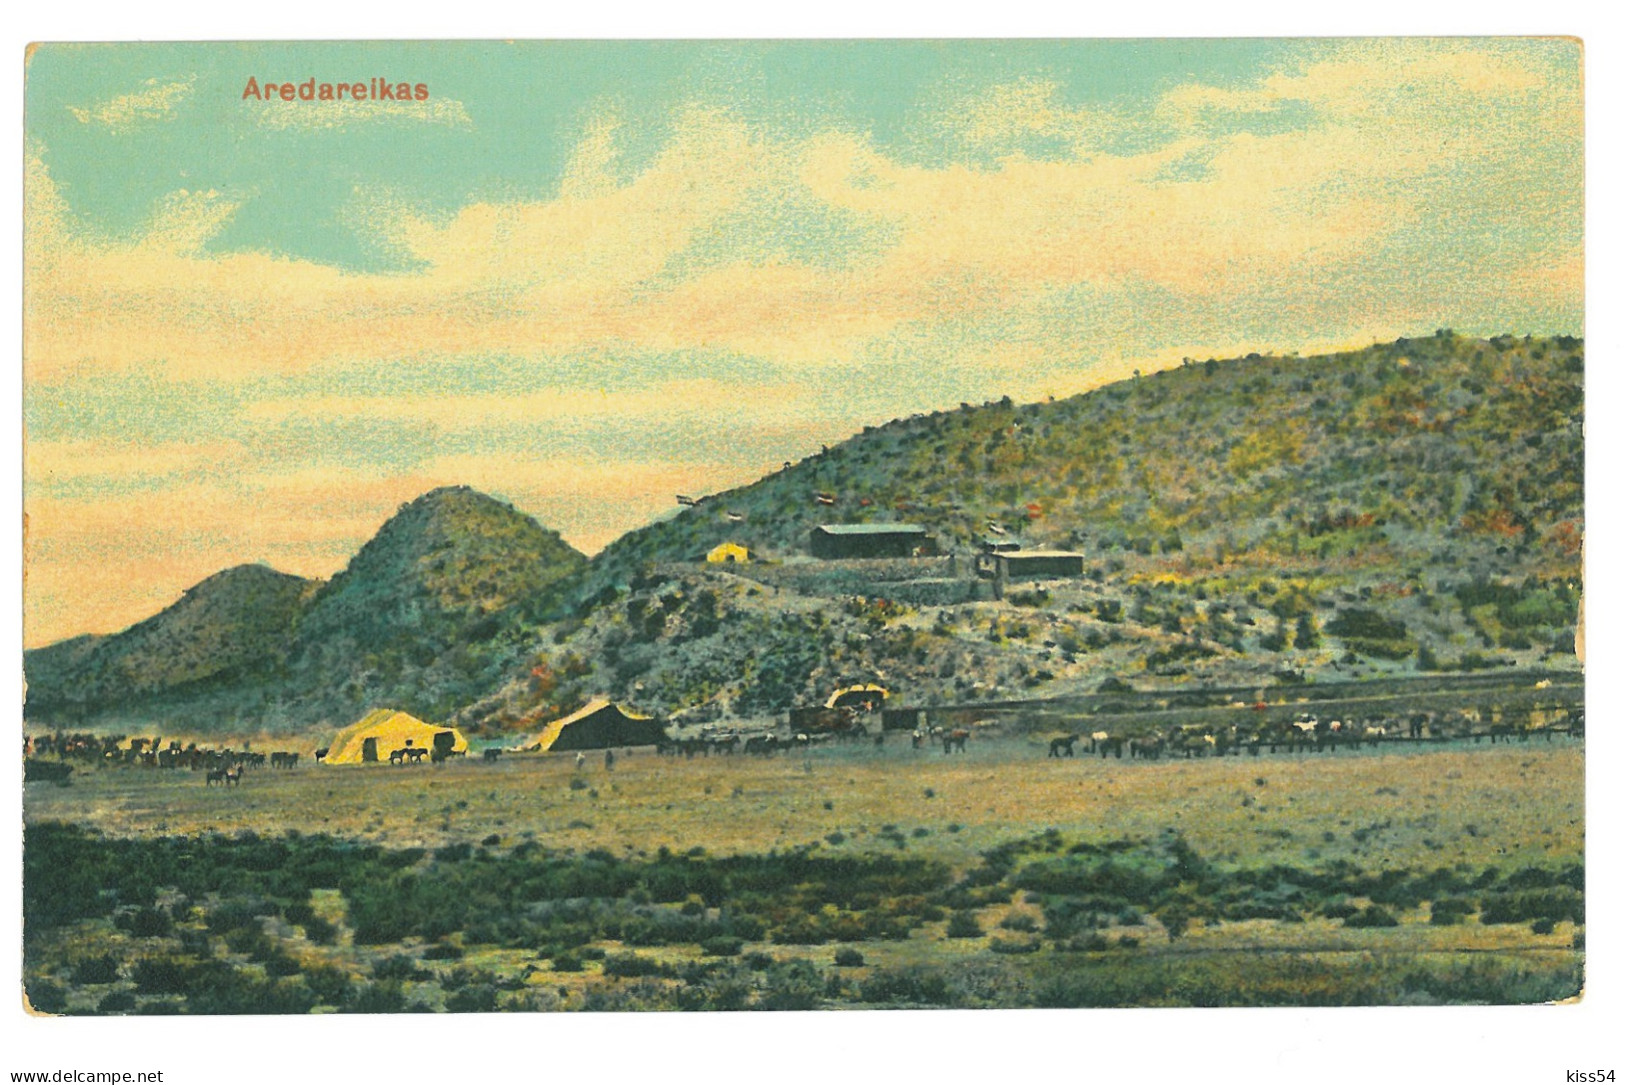 NAM 5 - 23913 AREDAREIKAS, Panorama, D.S.W. Afrika, Namibia - Old Postcard - Unused - Namibia